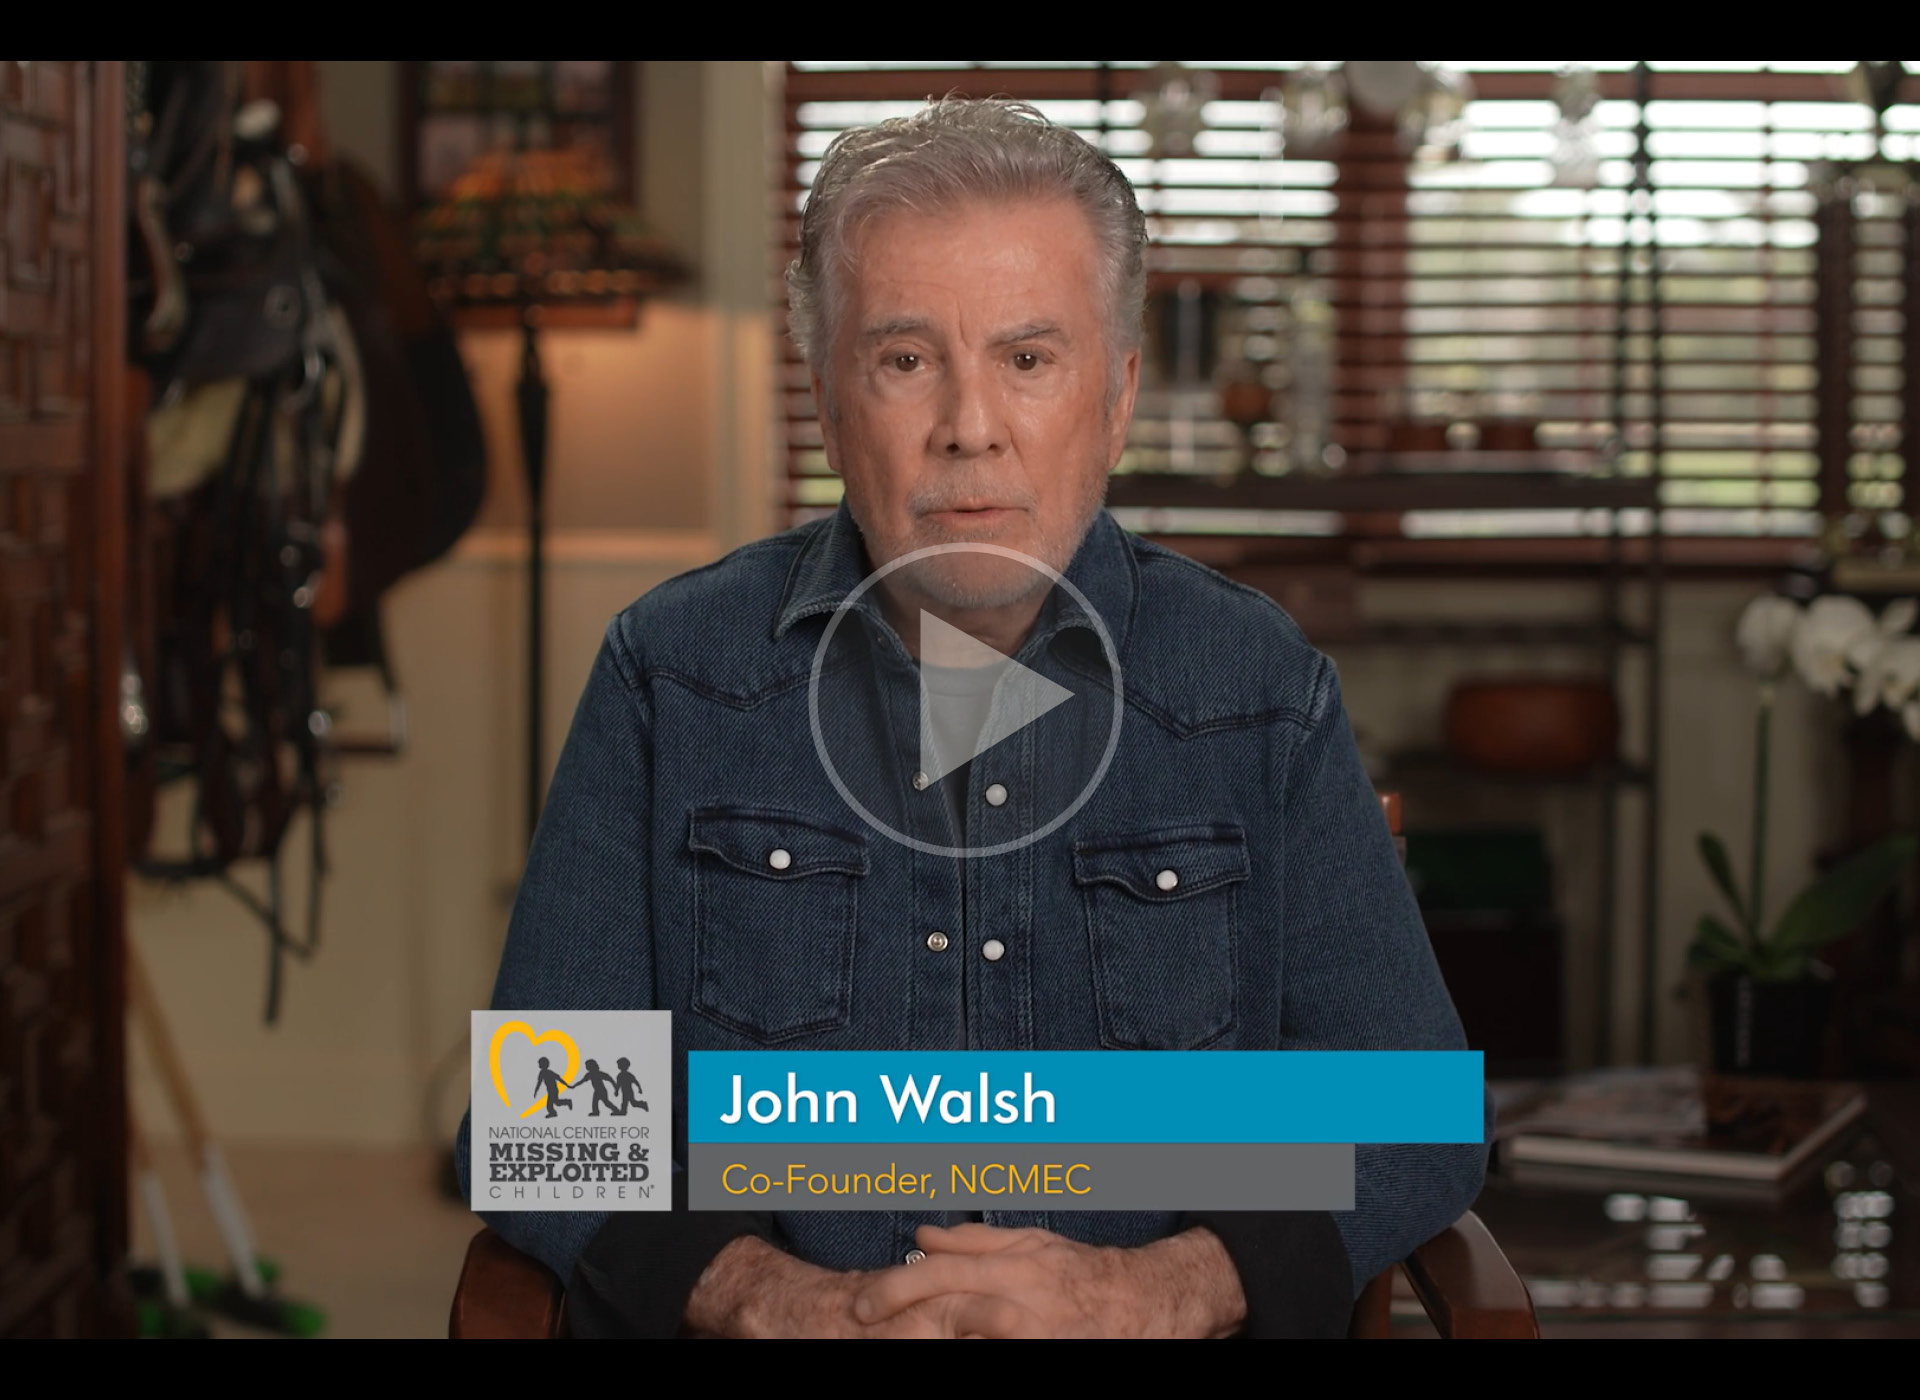 john walsh wears denim shirt and sits at desk